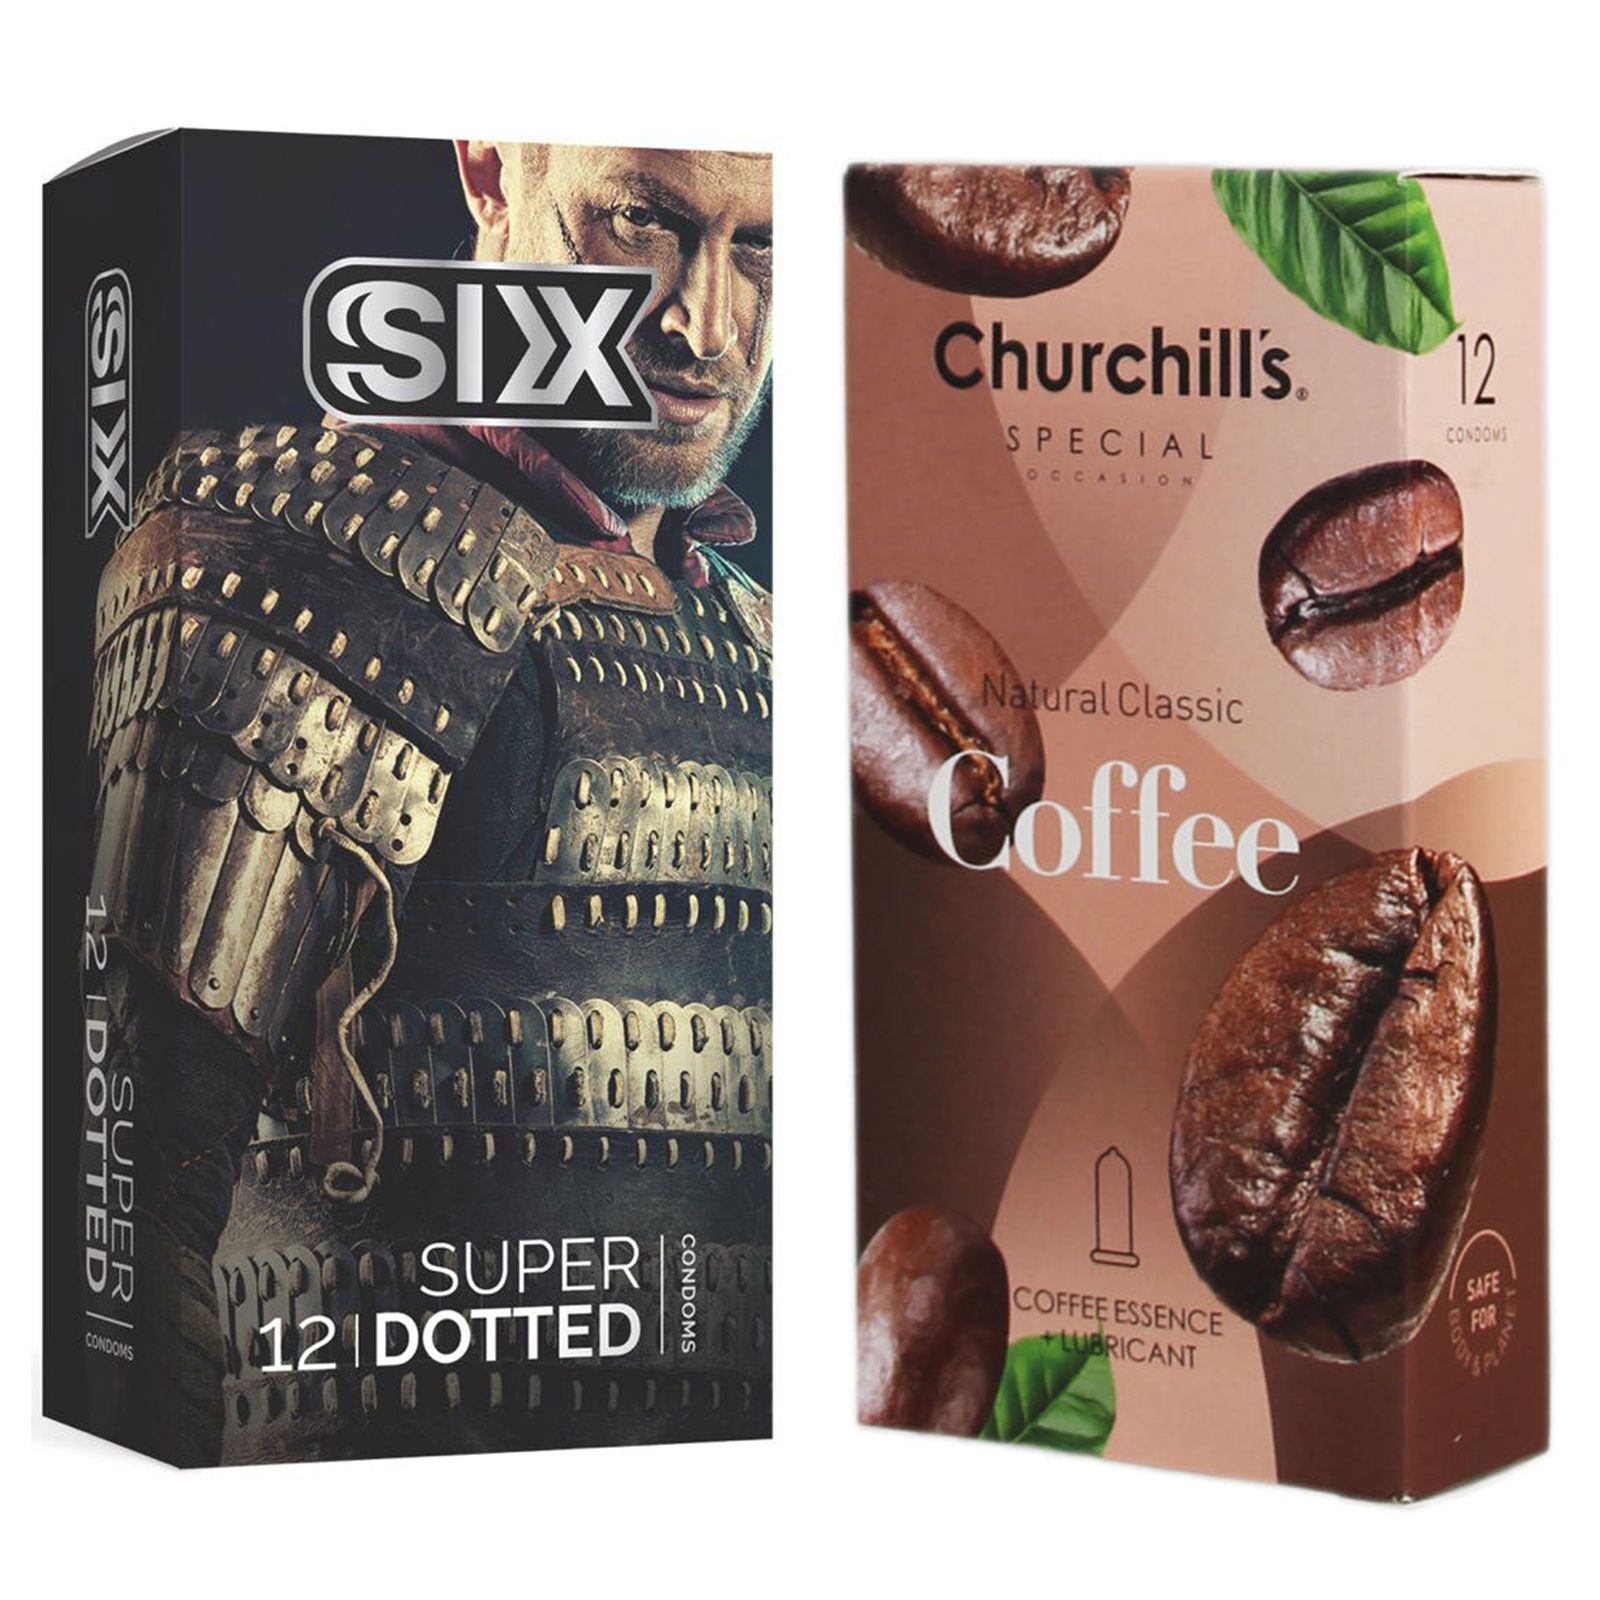 کاندوم چرچیلز مدل Coffee بسته 12 عددی به همراه کاندوم سیکس مدل خاردار بسته 12 عددی  -  - 2